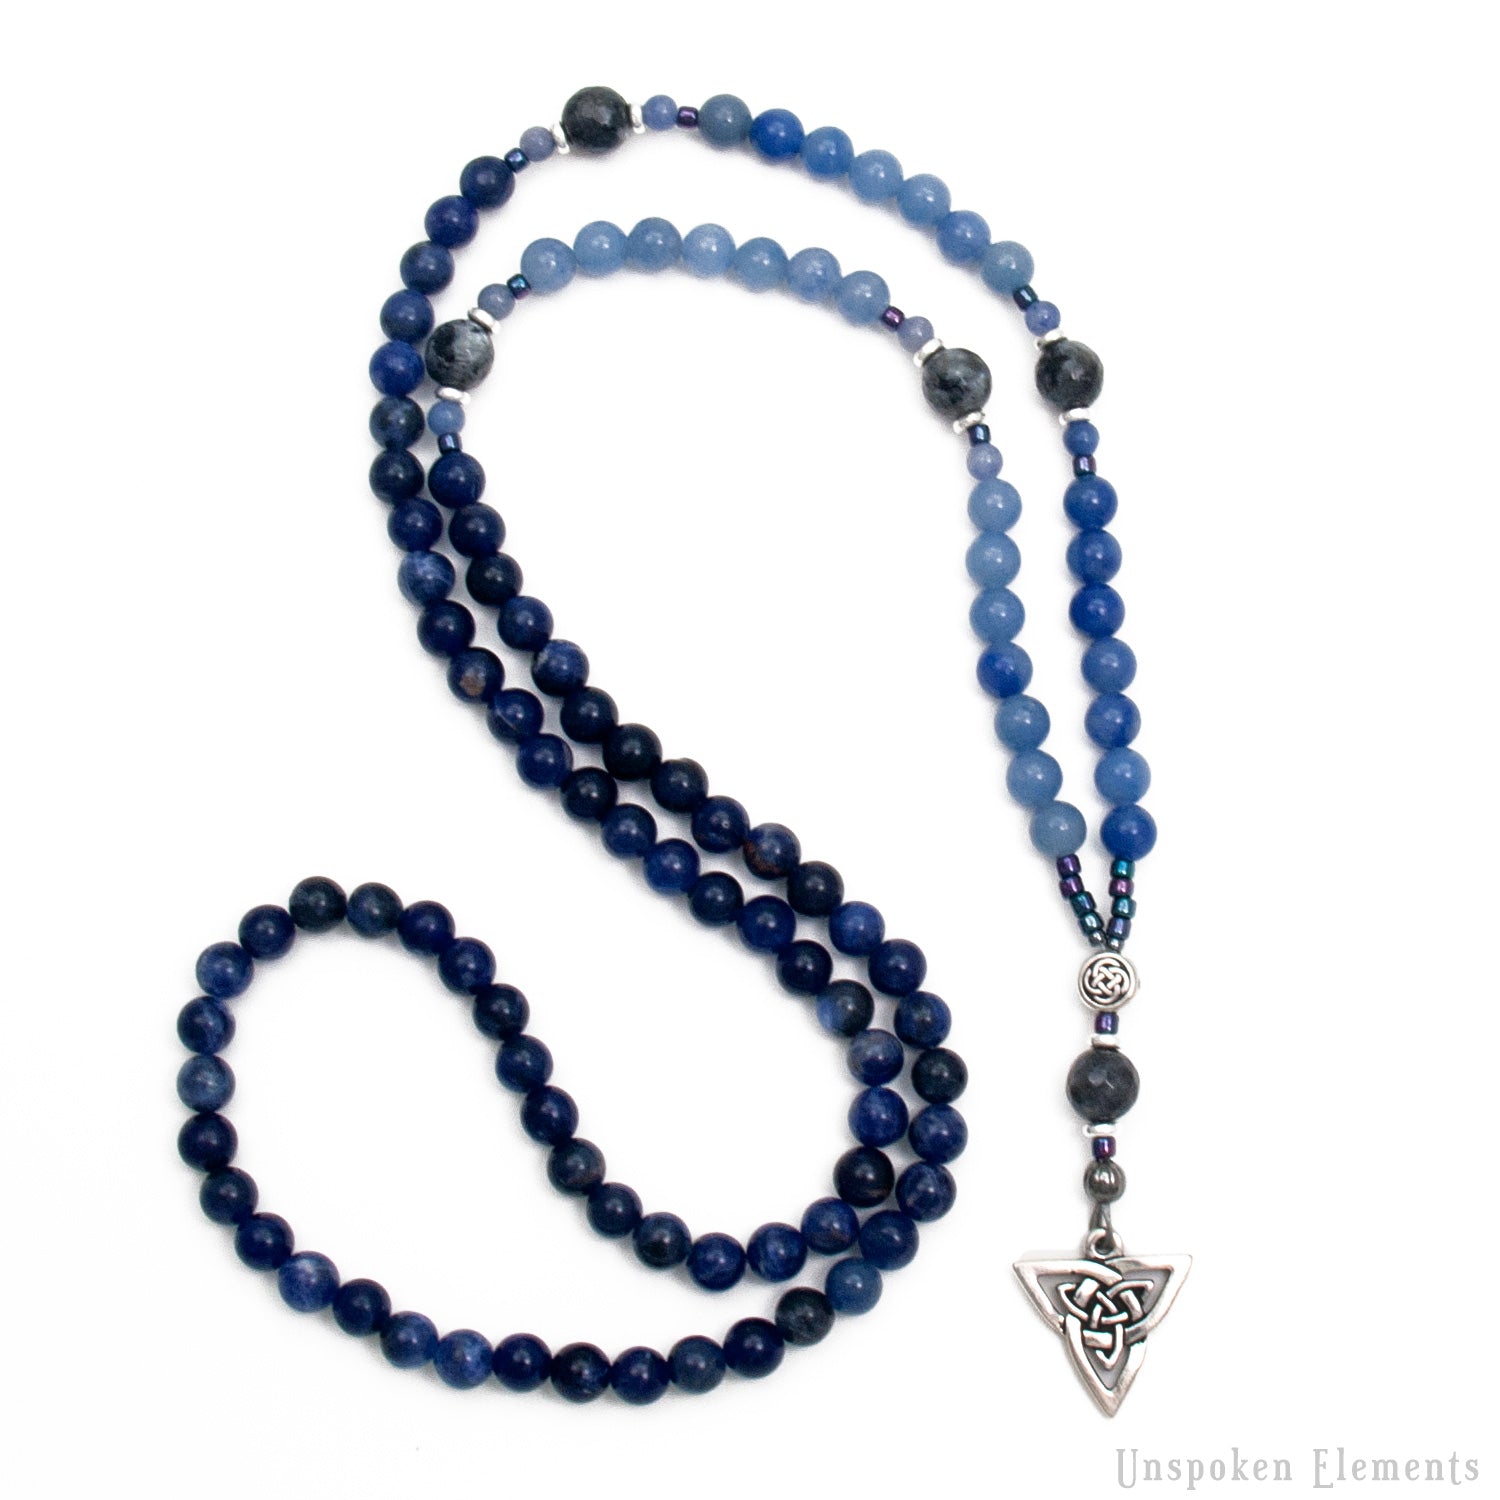 Triquetra Prayer Necklace by Unspoken Elements